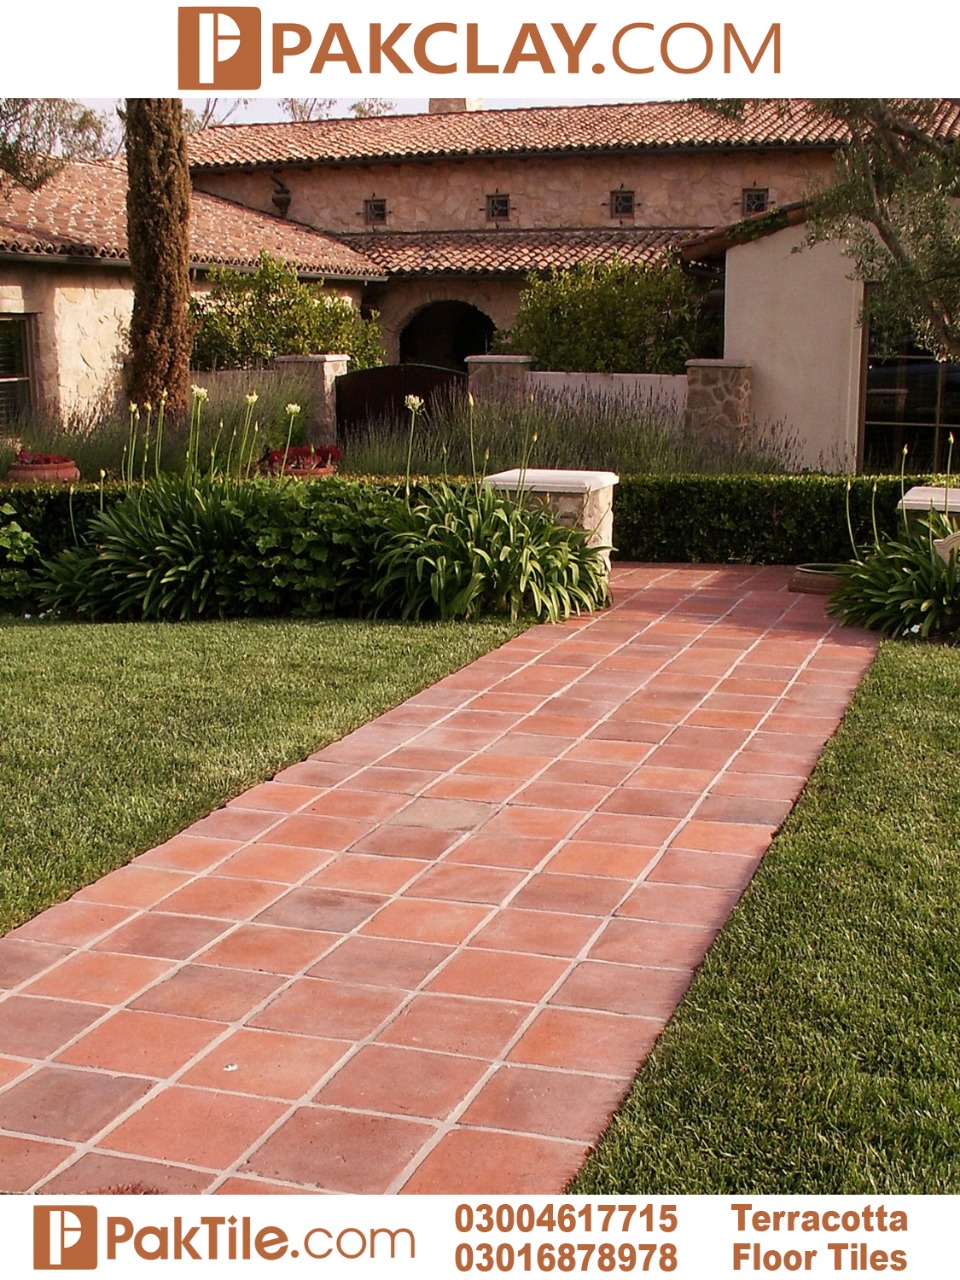 Outdoor terracotta flooring tiles design